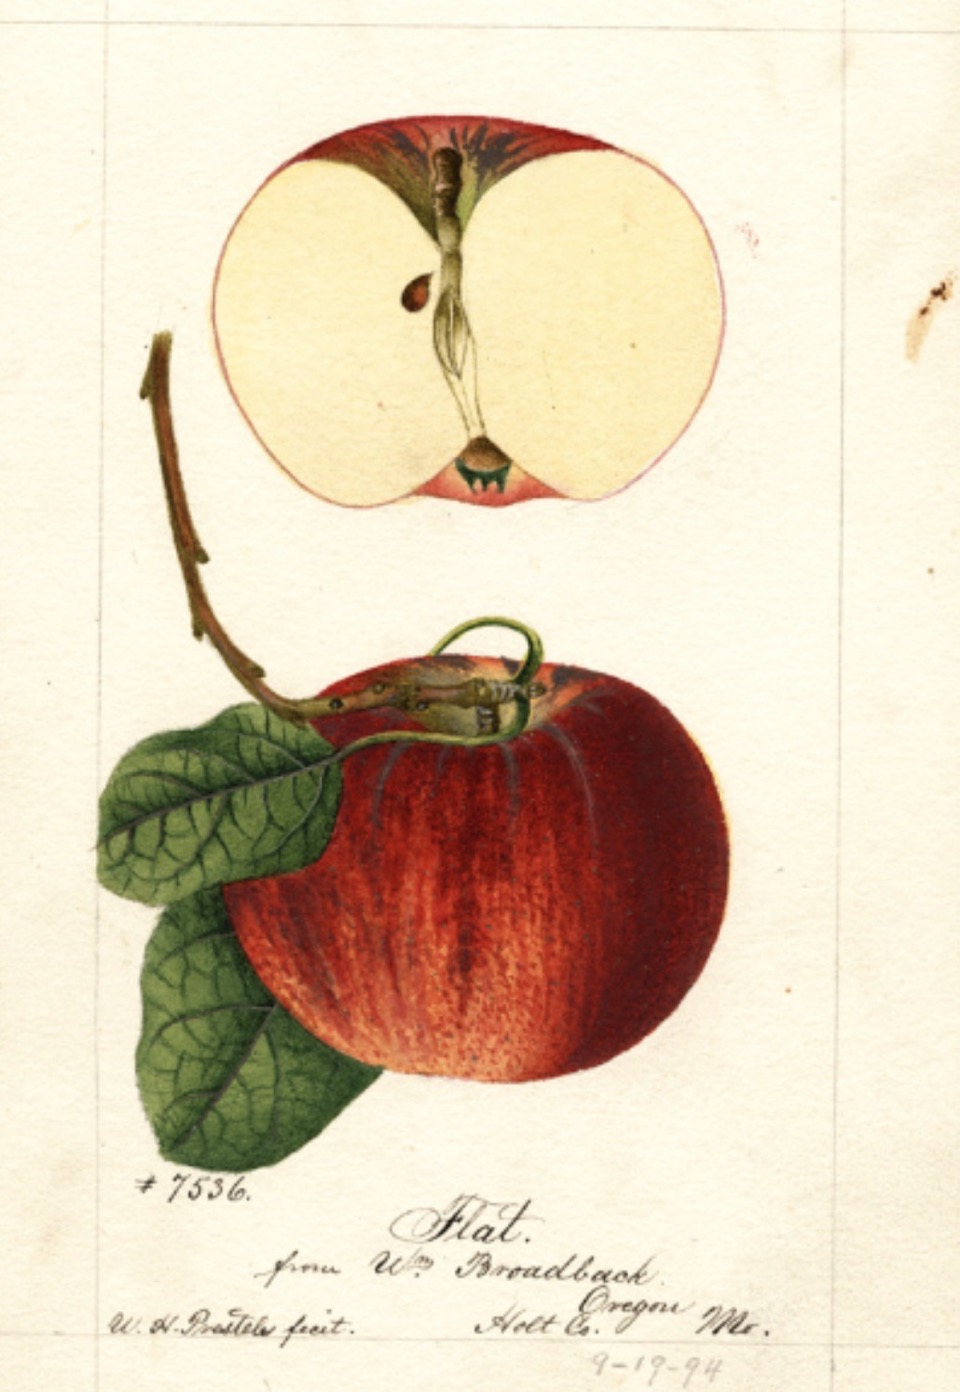 Historische Abbildung eines roten Apfels am Stiel mit Blättern und eines aufgeschnittenen Apfels; USDA